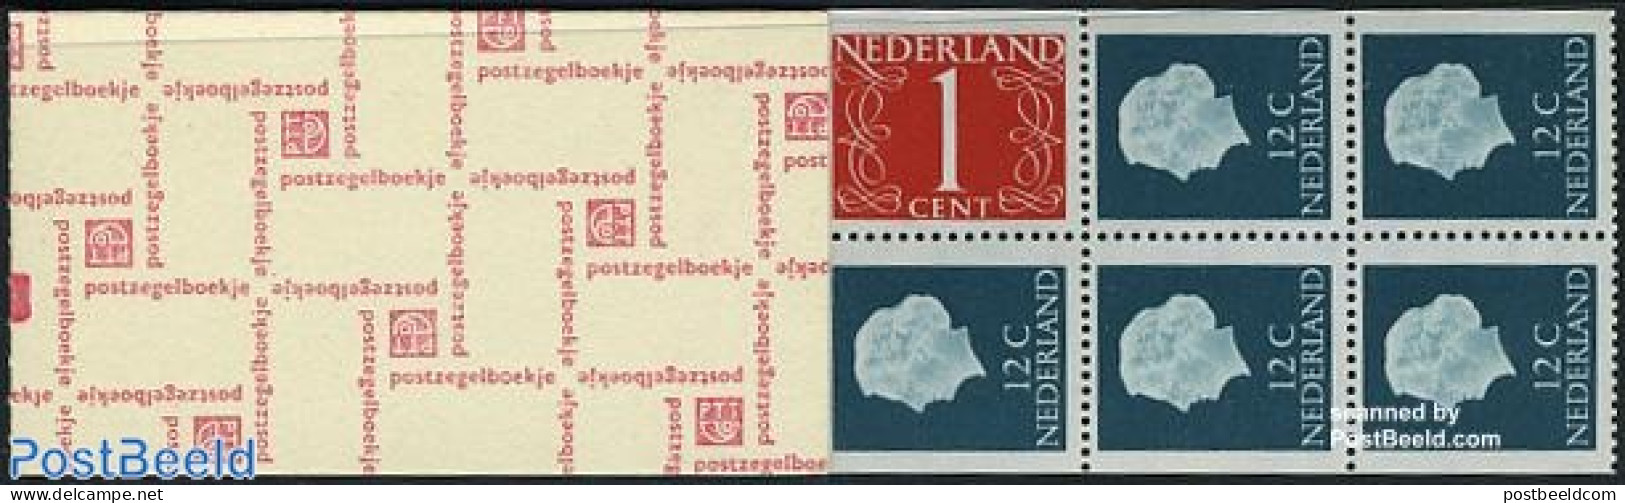 Netherlands 1969 4x1c+8x12c Booklet With Counter Block, Postgiro Ge, Mint NH - Ongebruikt